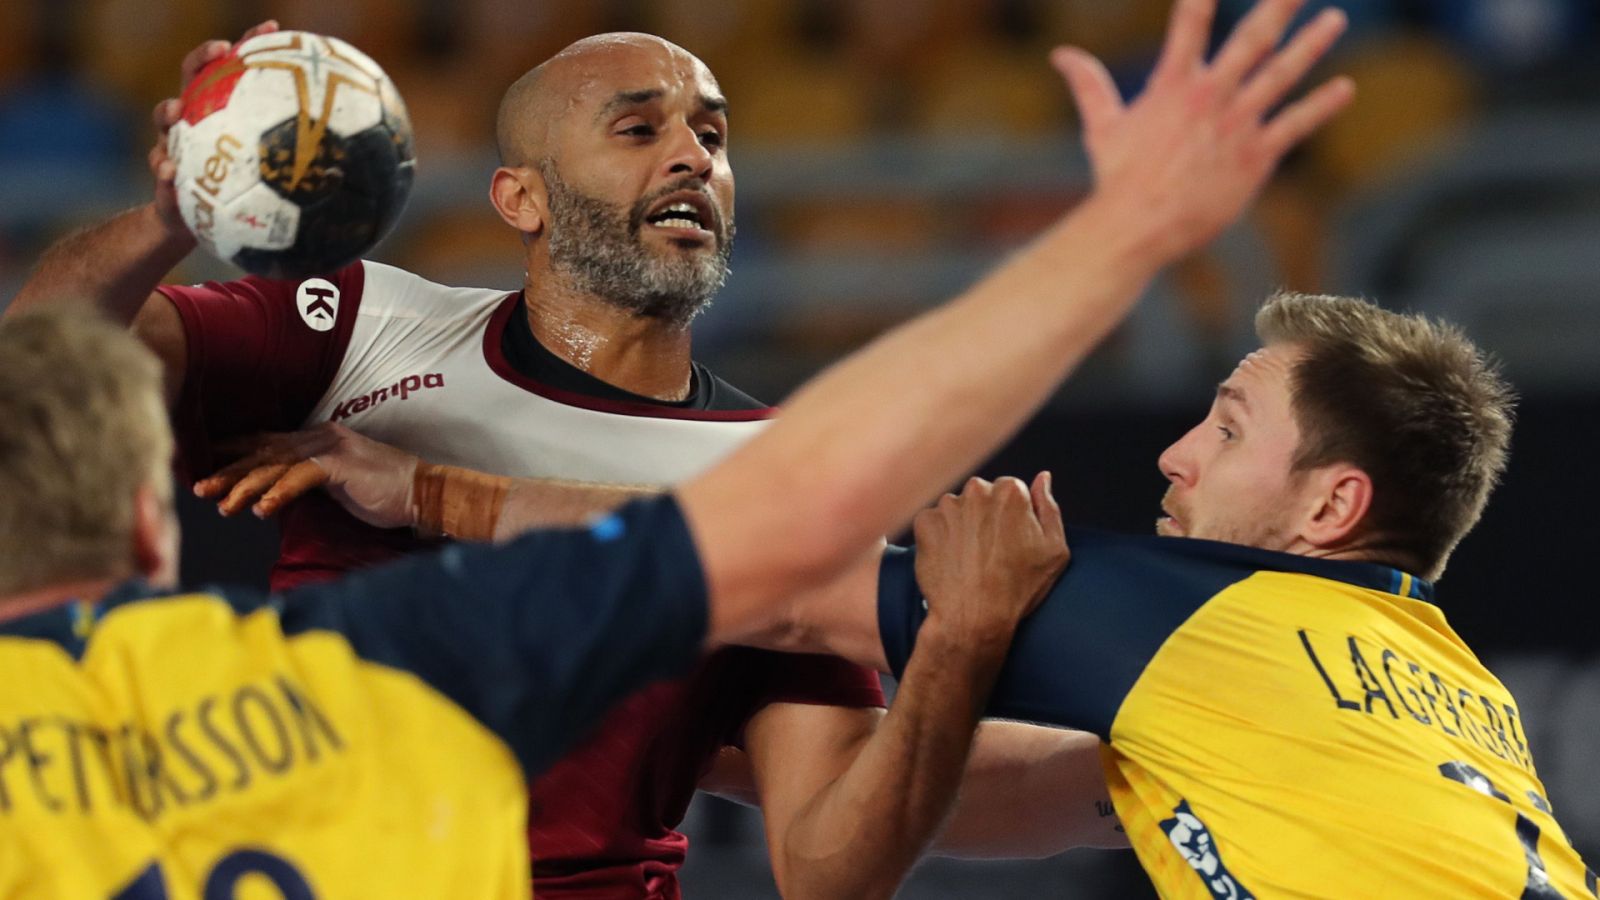 Balonmano - Campeonato del Mundo masculino: 1/4 Final: Suecia - Qatar